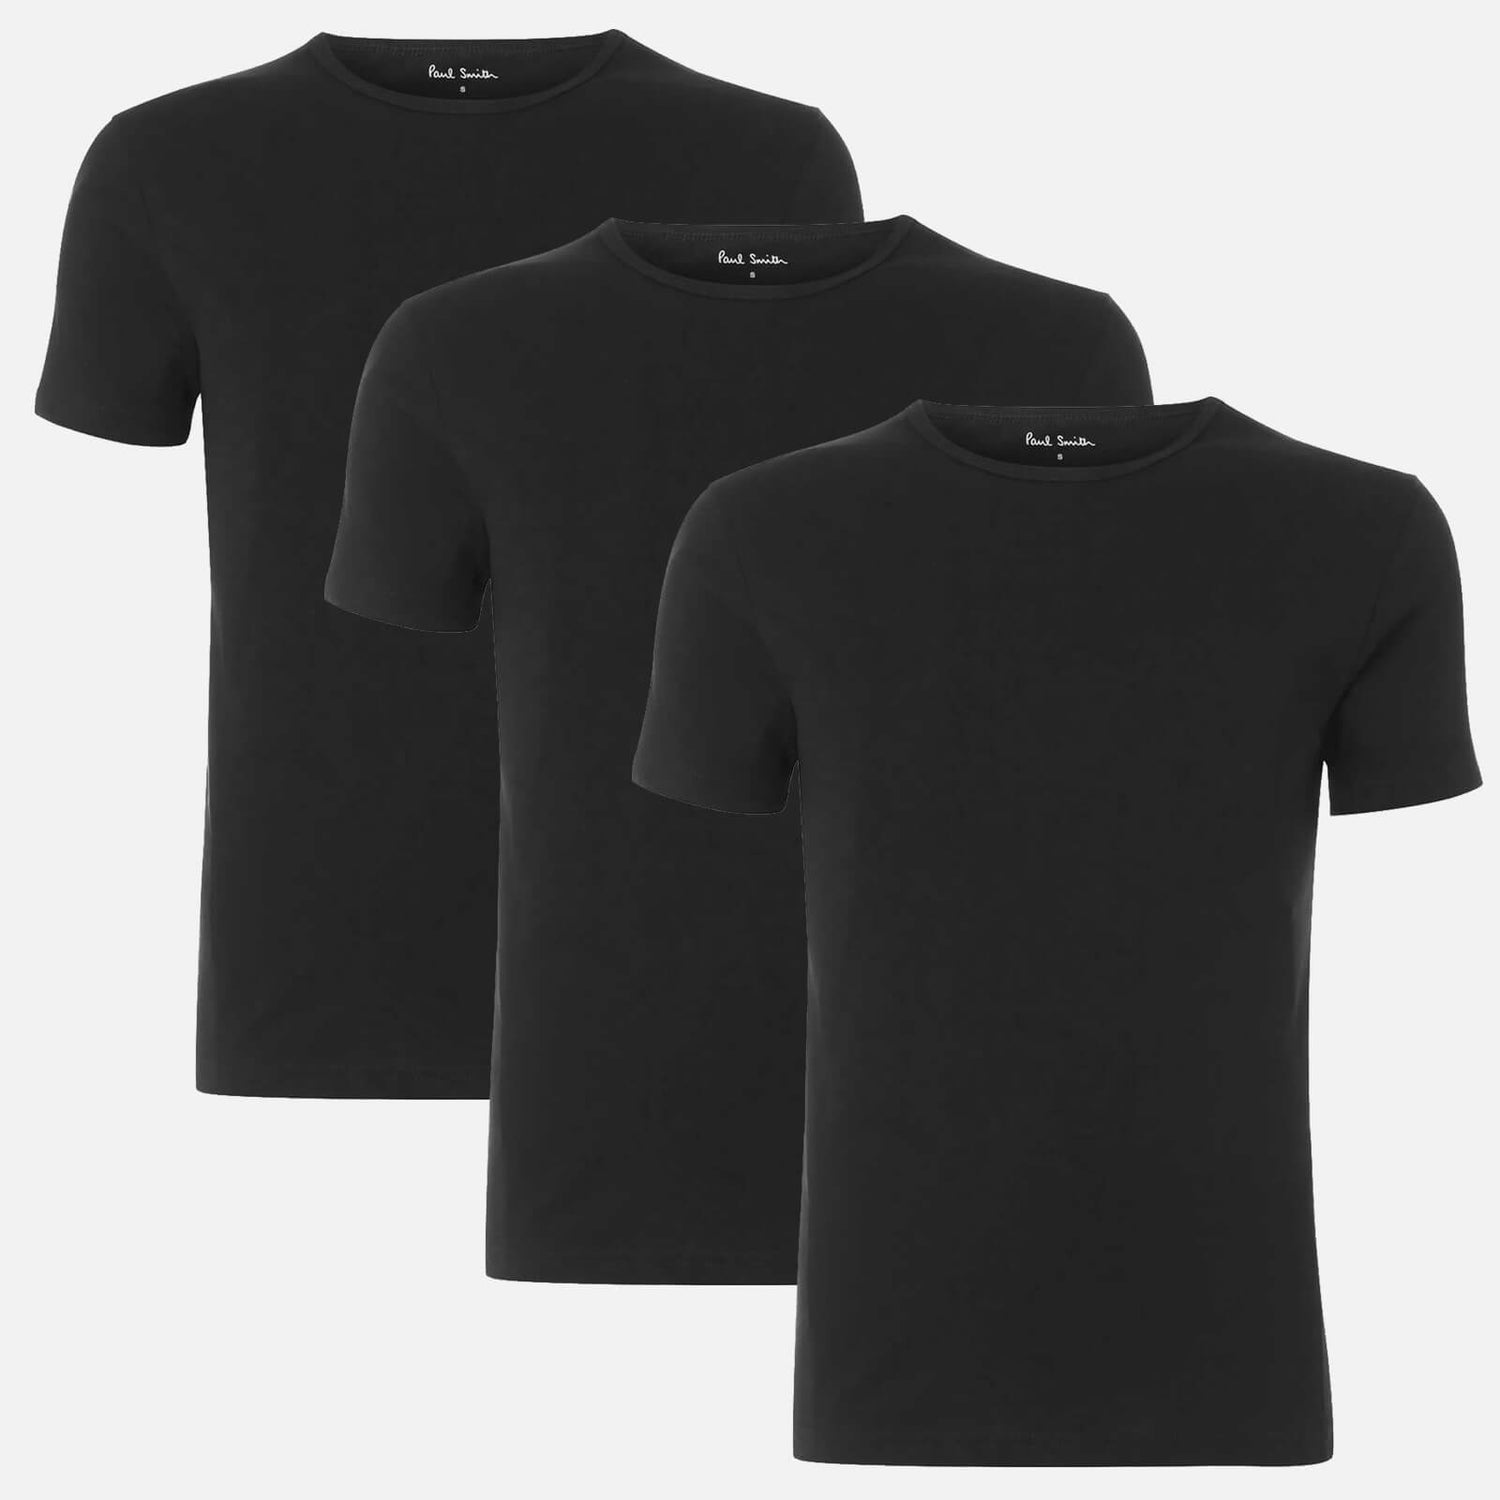 PS Paul Smith Men's 3-Pack Crewneck T-Shirts - Black - S